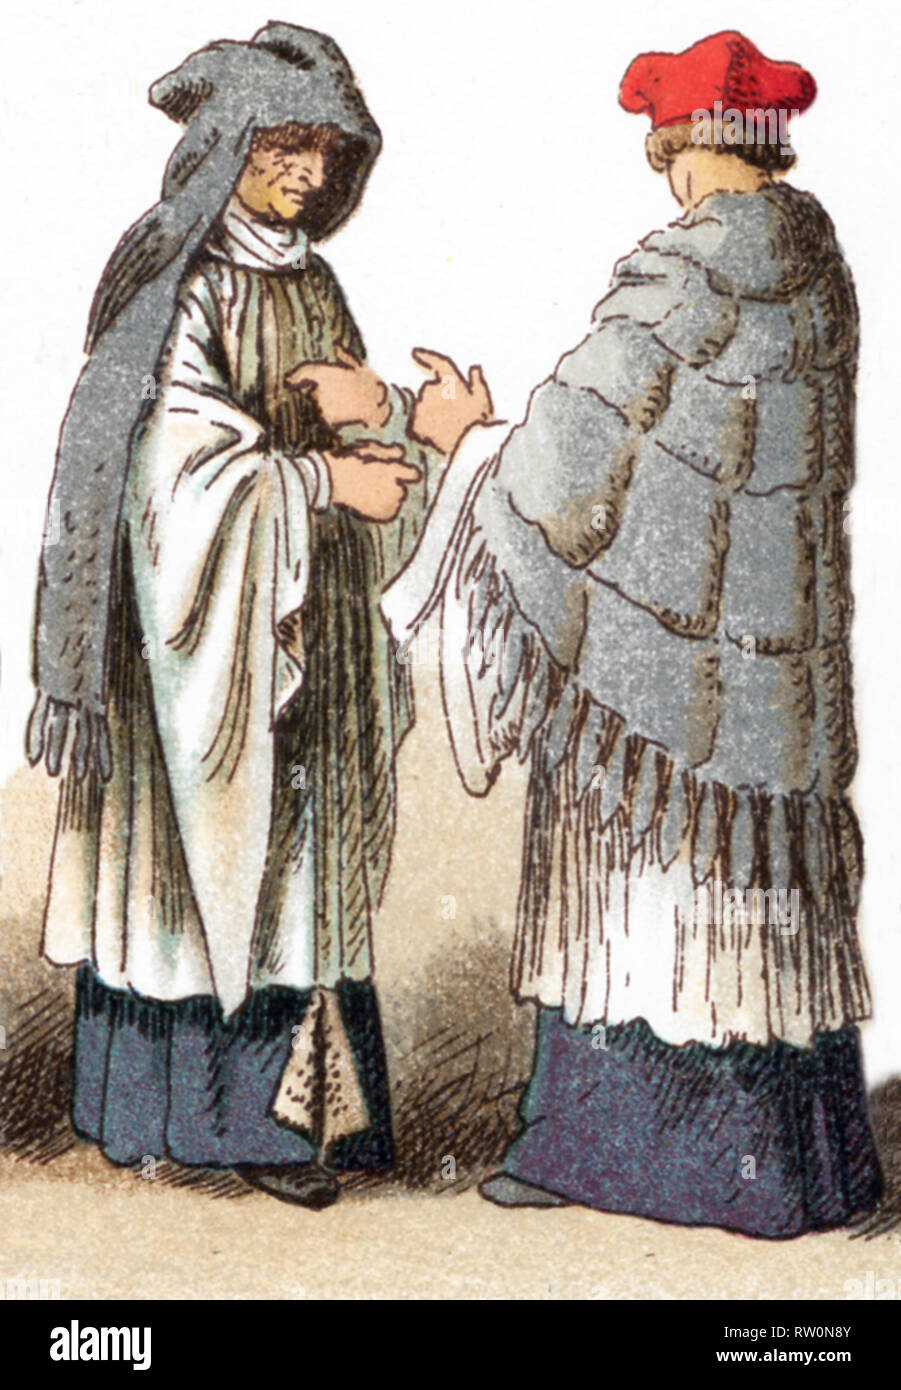 Le illustrazioni riportate di seguito mostrano i costumi ecclesiastici di un canonico indossando un fronte e amess nel XV secolo e una Canon nel XVII secolo. L'illustrazione risale al 1882. Foto Stock